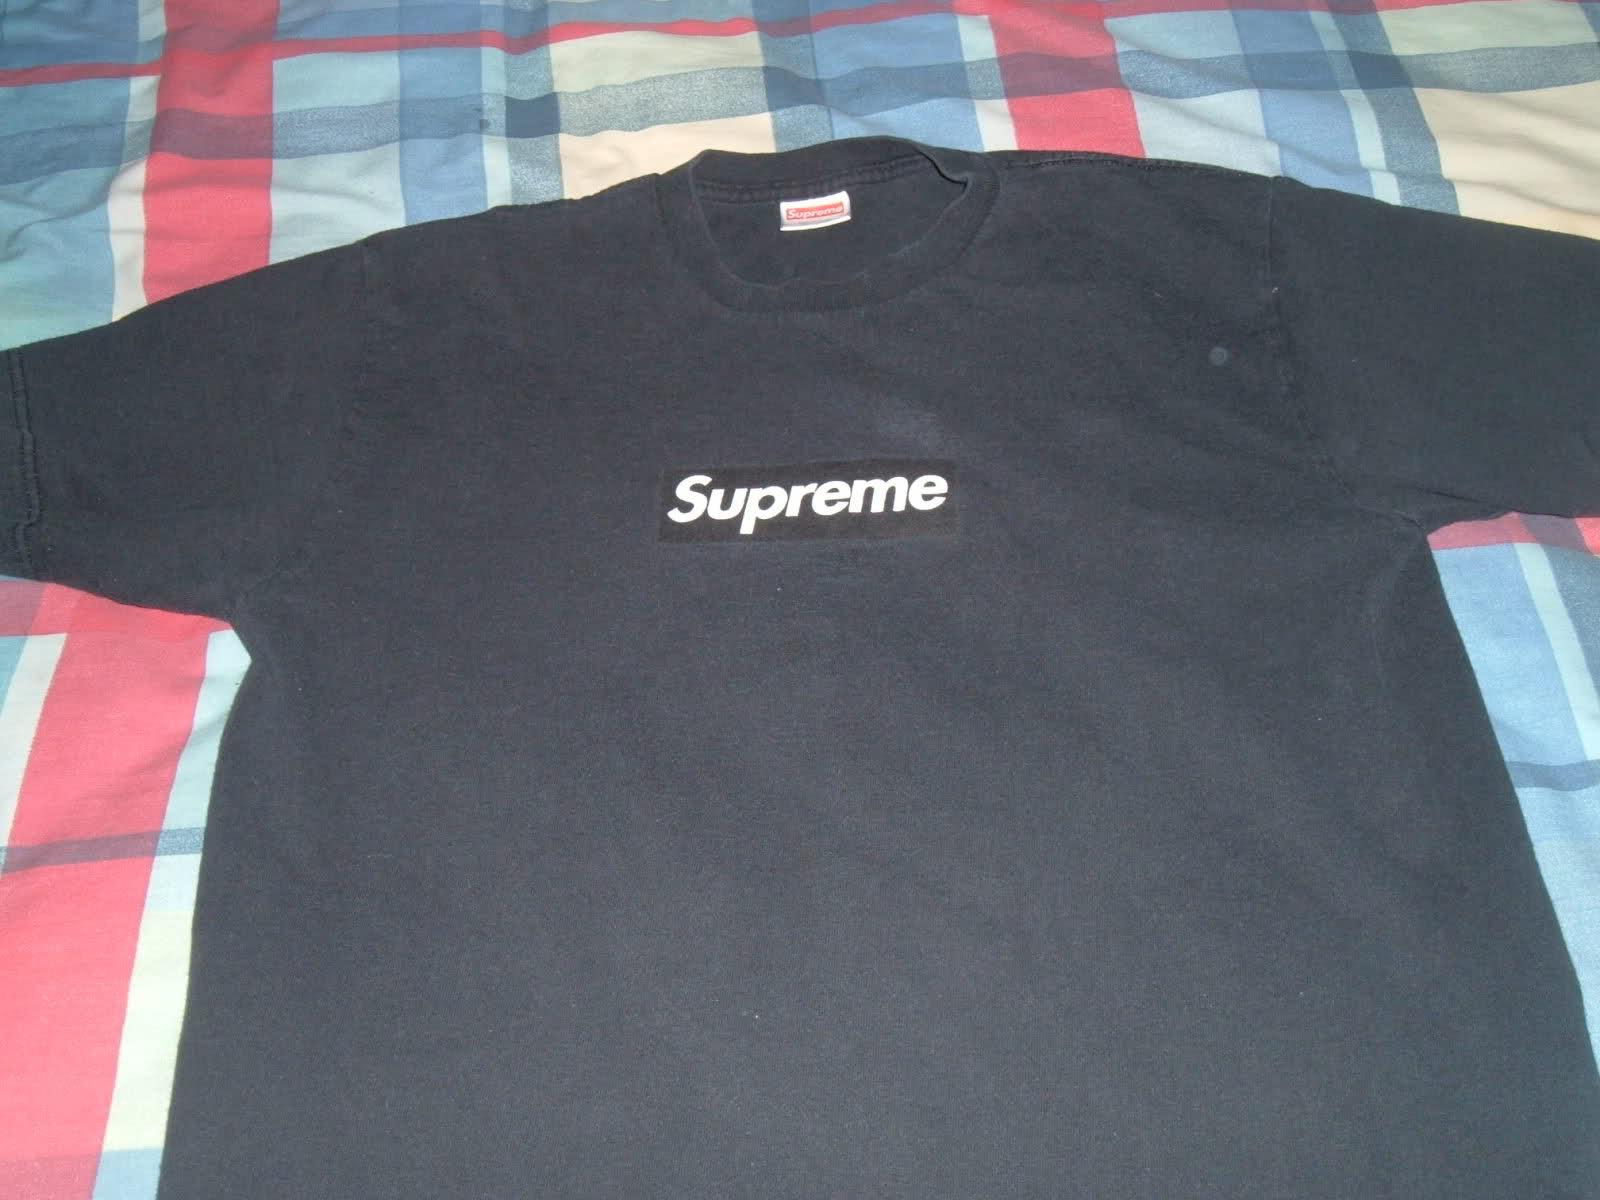 Real Black Supreme Box Logo - Chainz Rocks Rare Supreme Black Box Logo T Shirt, Joyrich LA